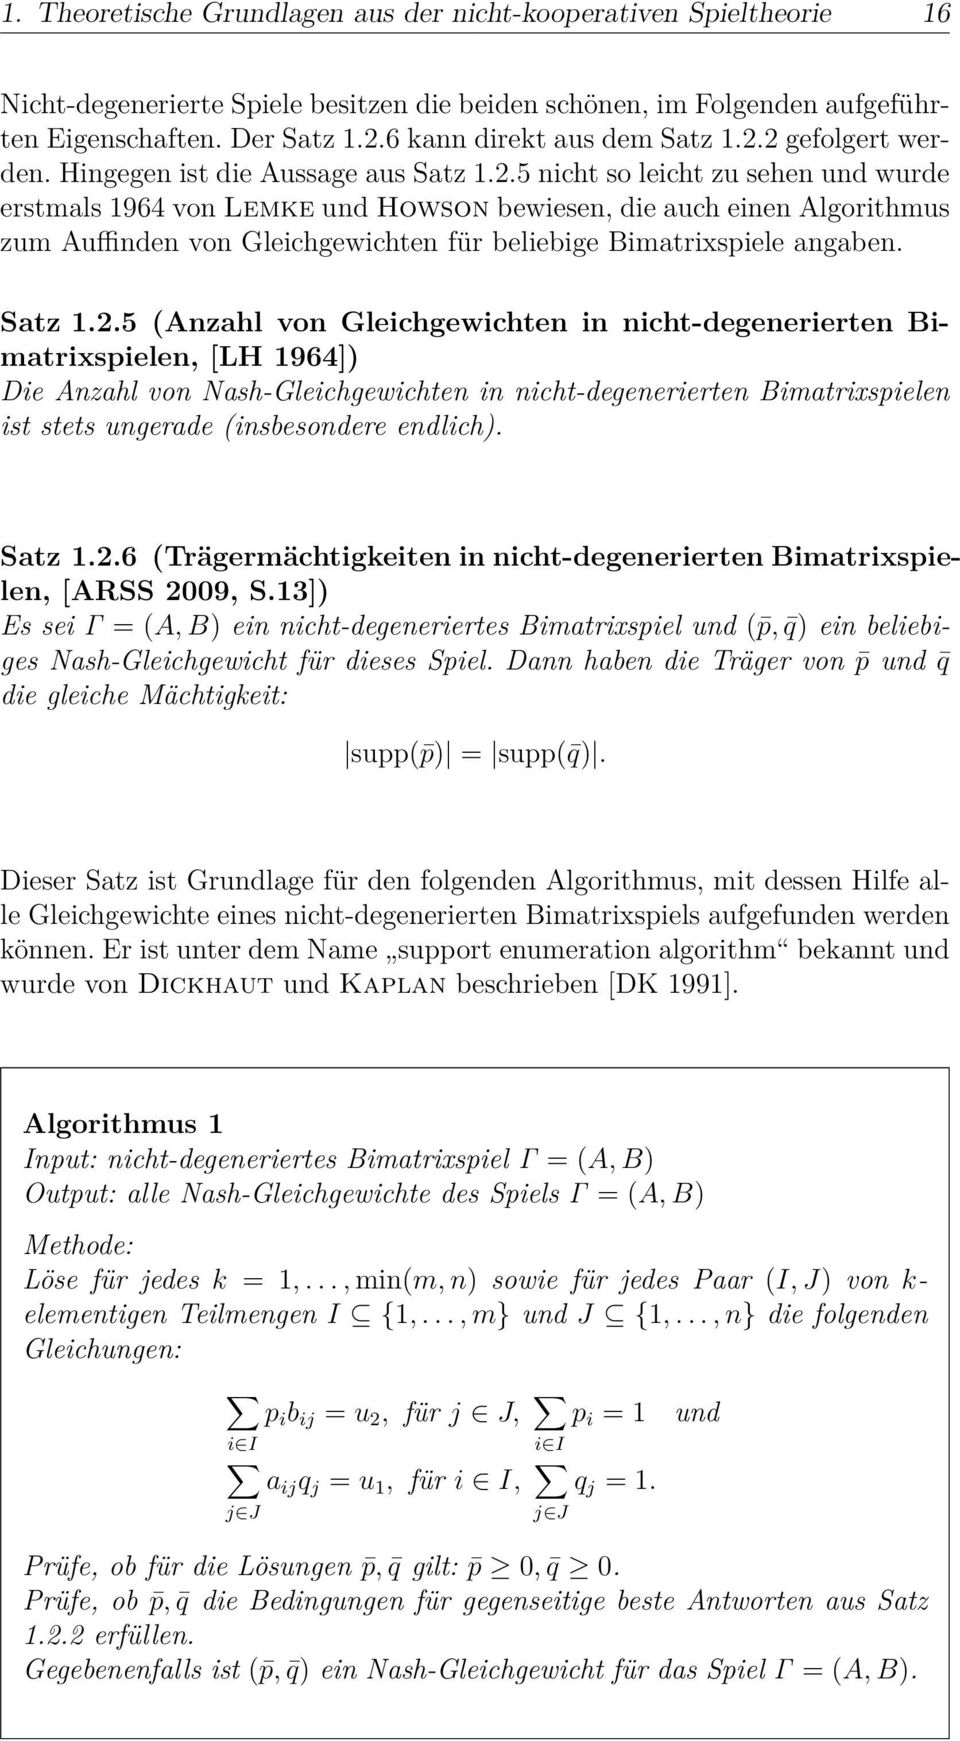 2 gefolgert werden. Hingegen ist die Aussage aus Satz.2.5 nicht so leicht zu sehen und wurde erstmals 964 von Lemke und Howson bewiesen, die auch einen Algorithmus zum Auffinden von Gleichgewichten für beliebige Bimatrixspiele angaben.